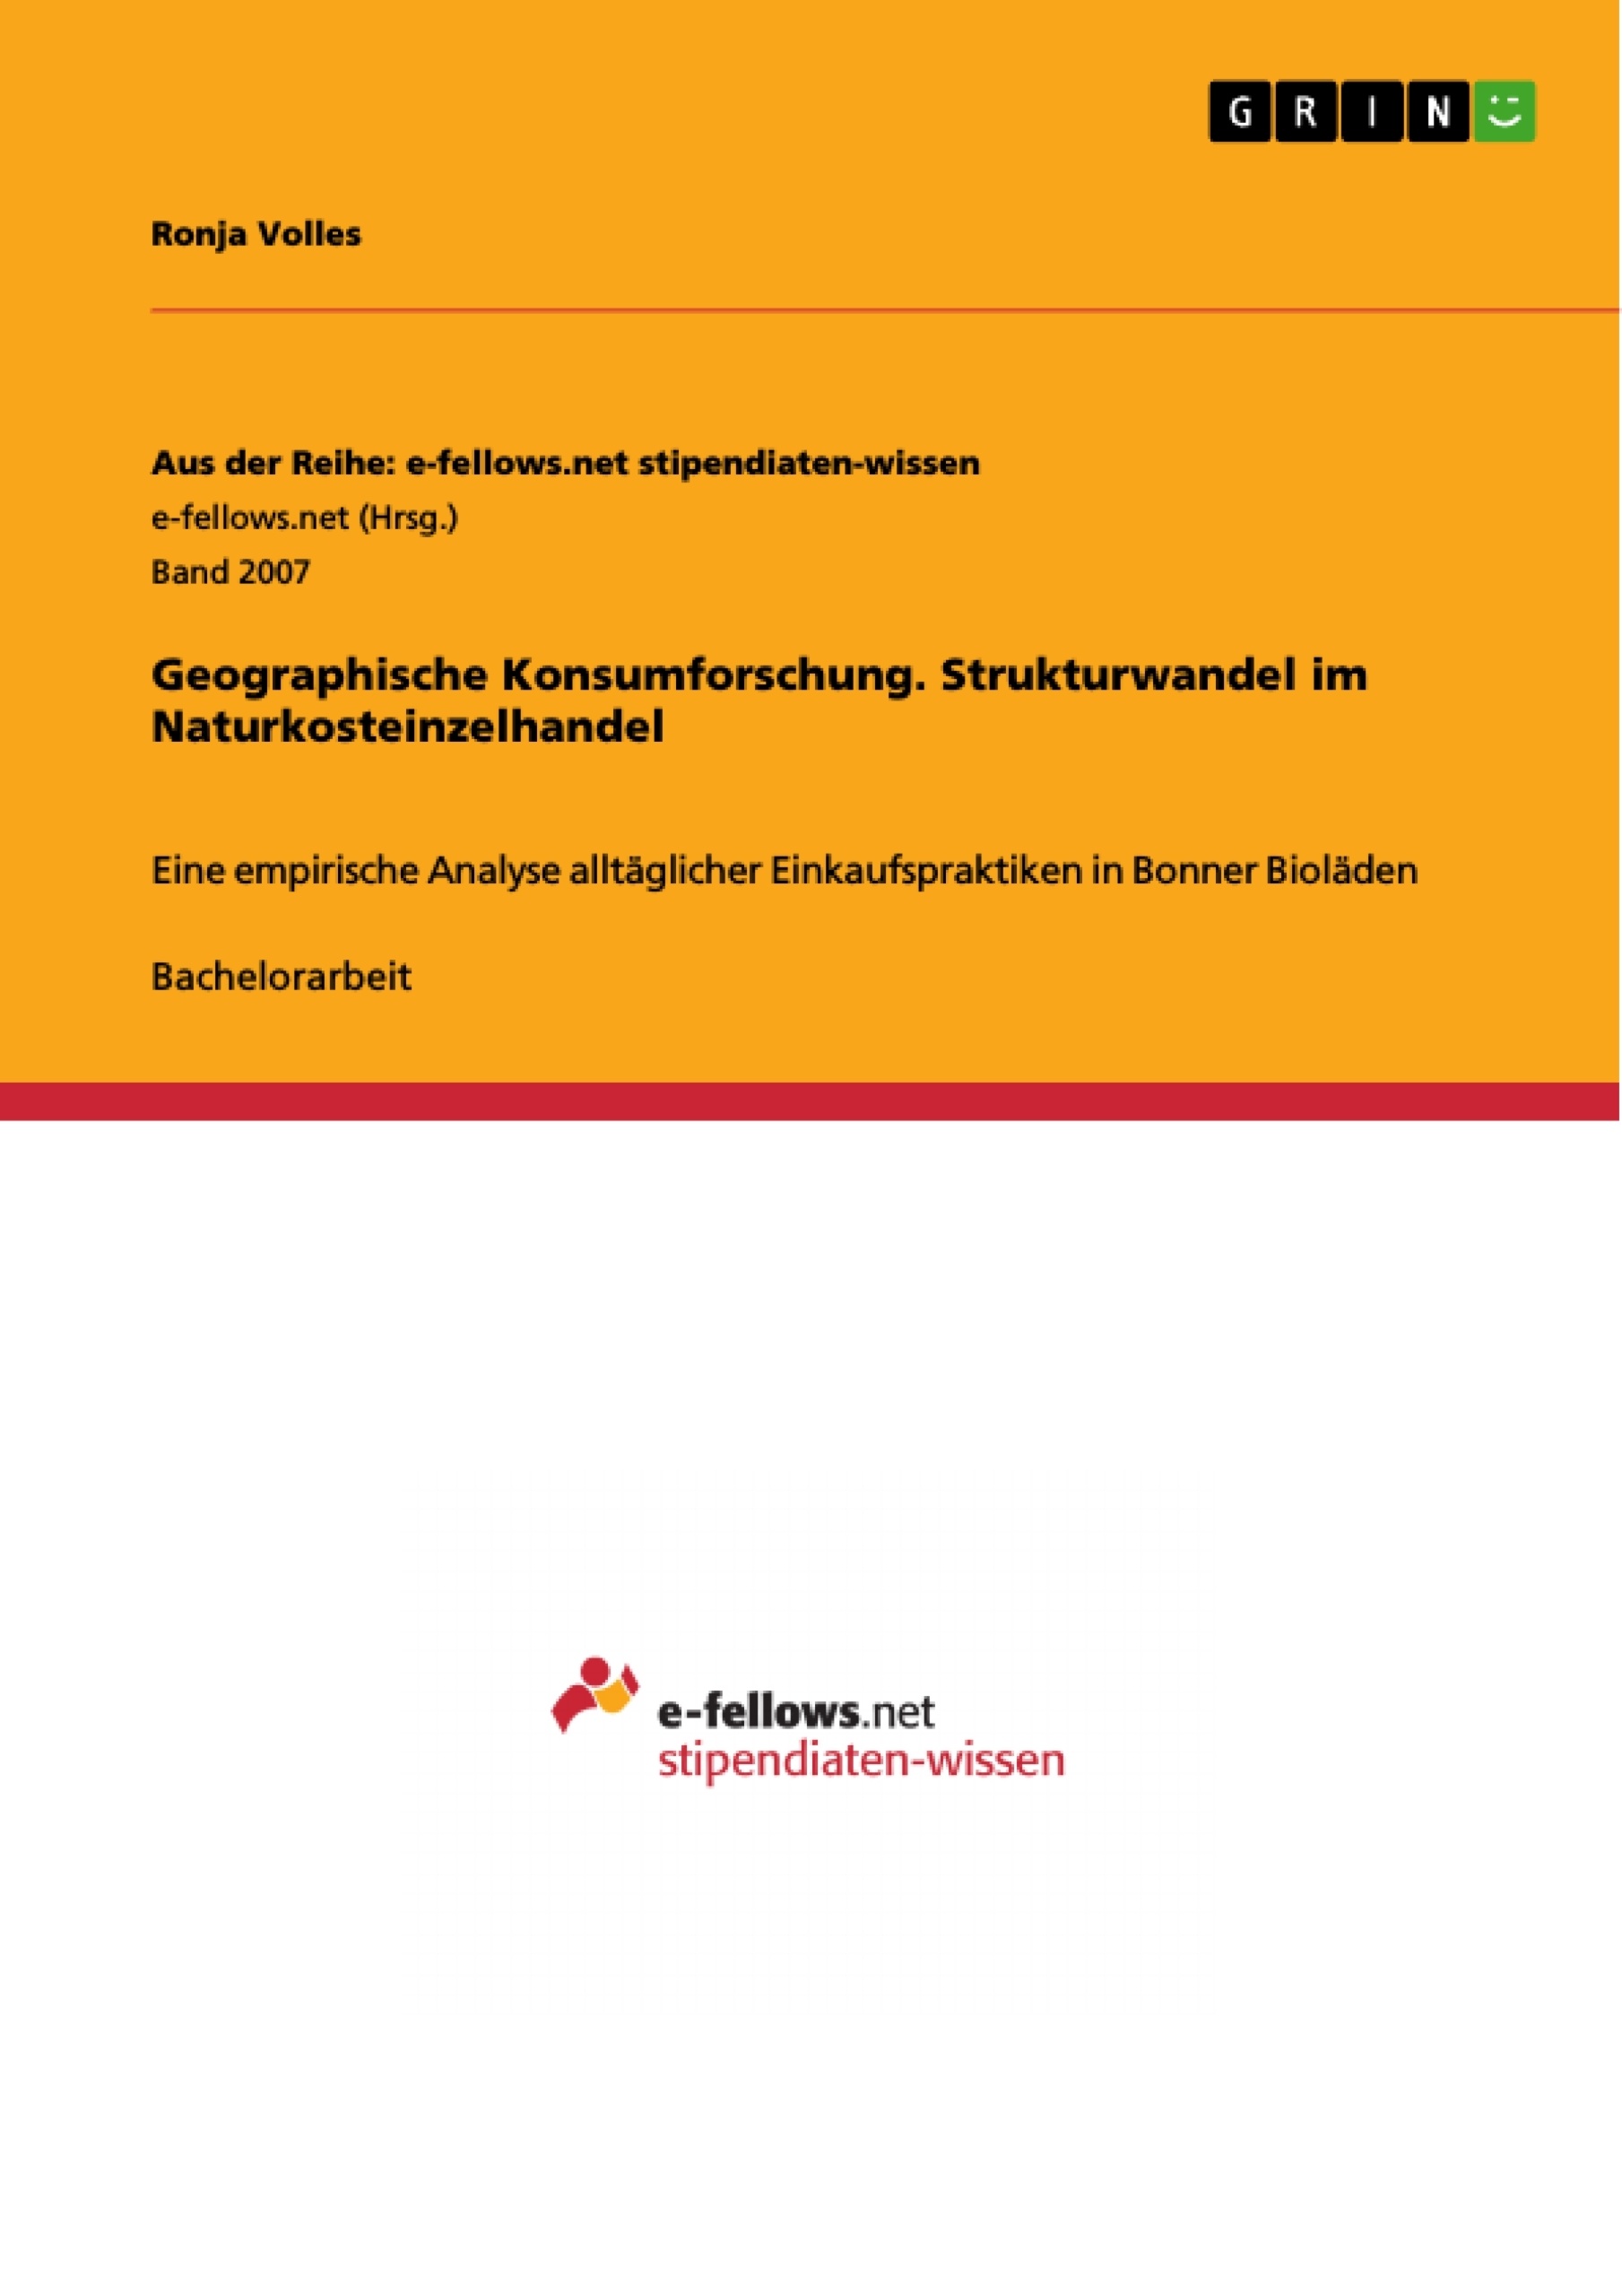 Título: Geographische Konsumforschung. Strukturwandel im Naturkosteinzelhandel